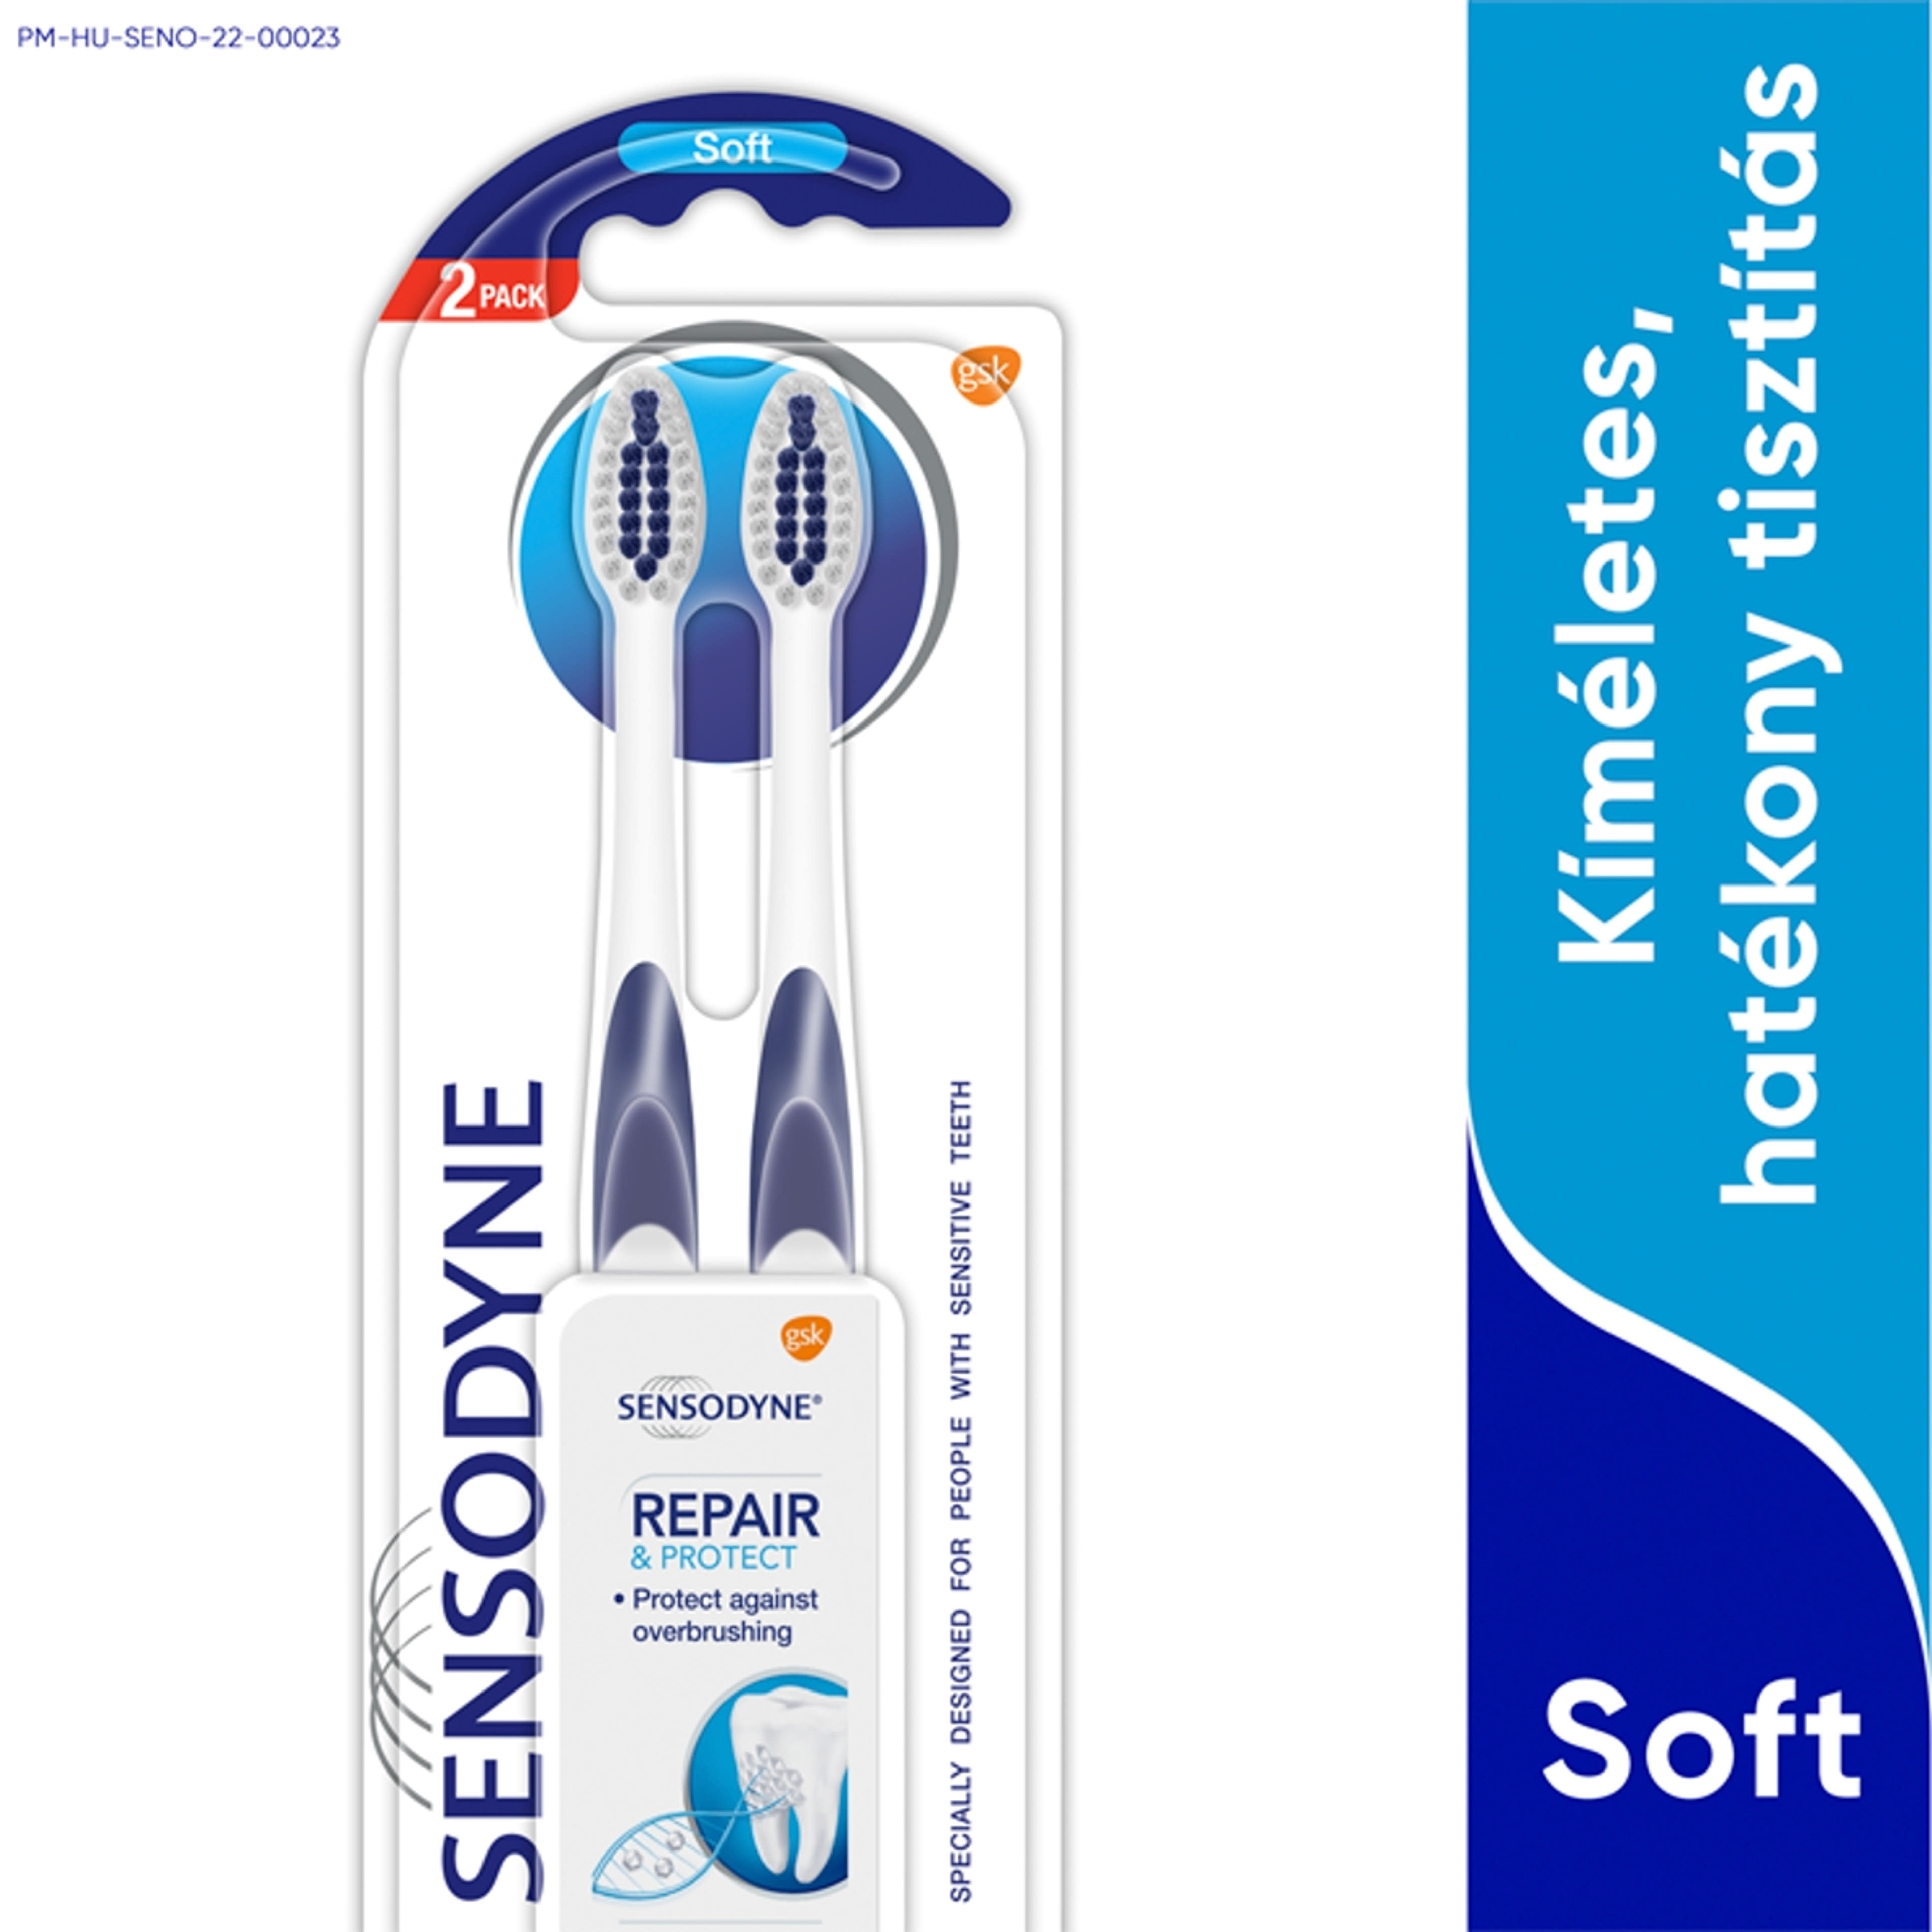 Sensodyne Repair & Protect Soft Duopack fogkefe - 2 db-1